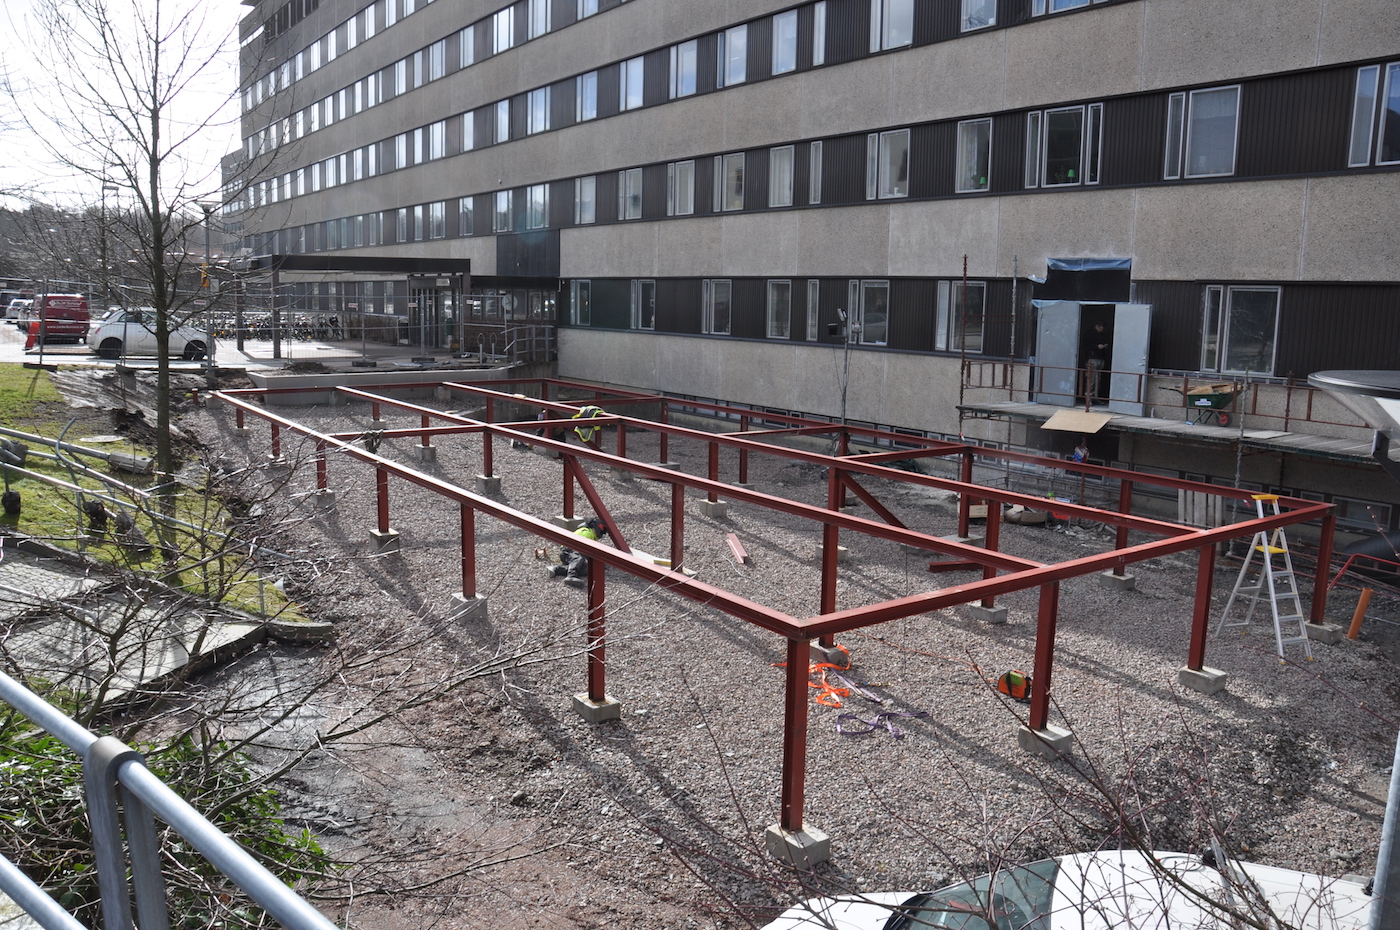 Neonatalen på Östra sjukhuset i Göteborg växer fram med 14 PCS Classicmoduler.